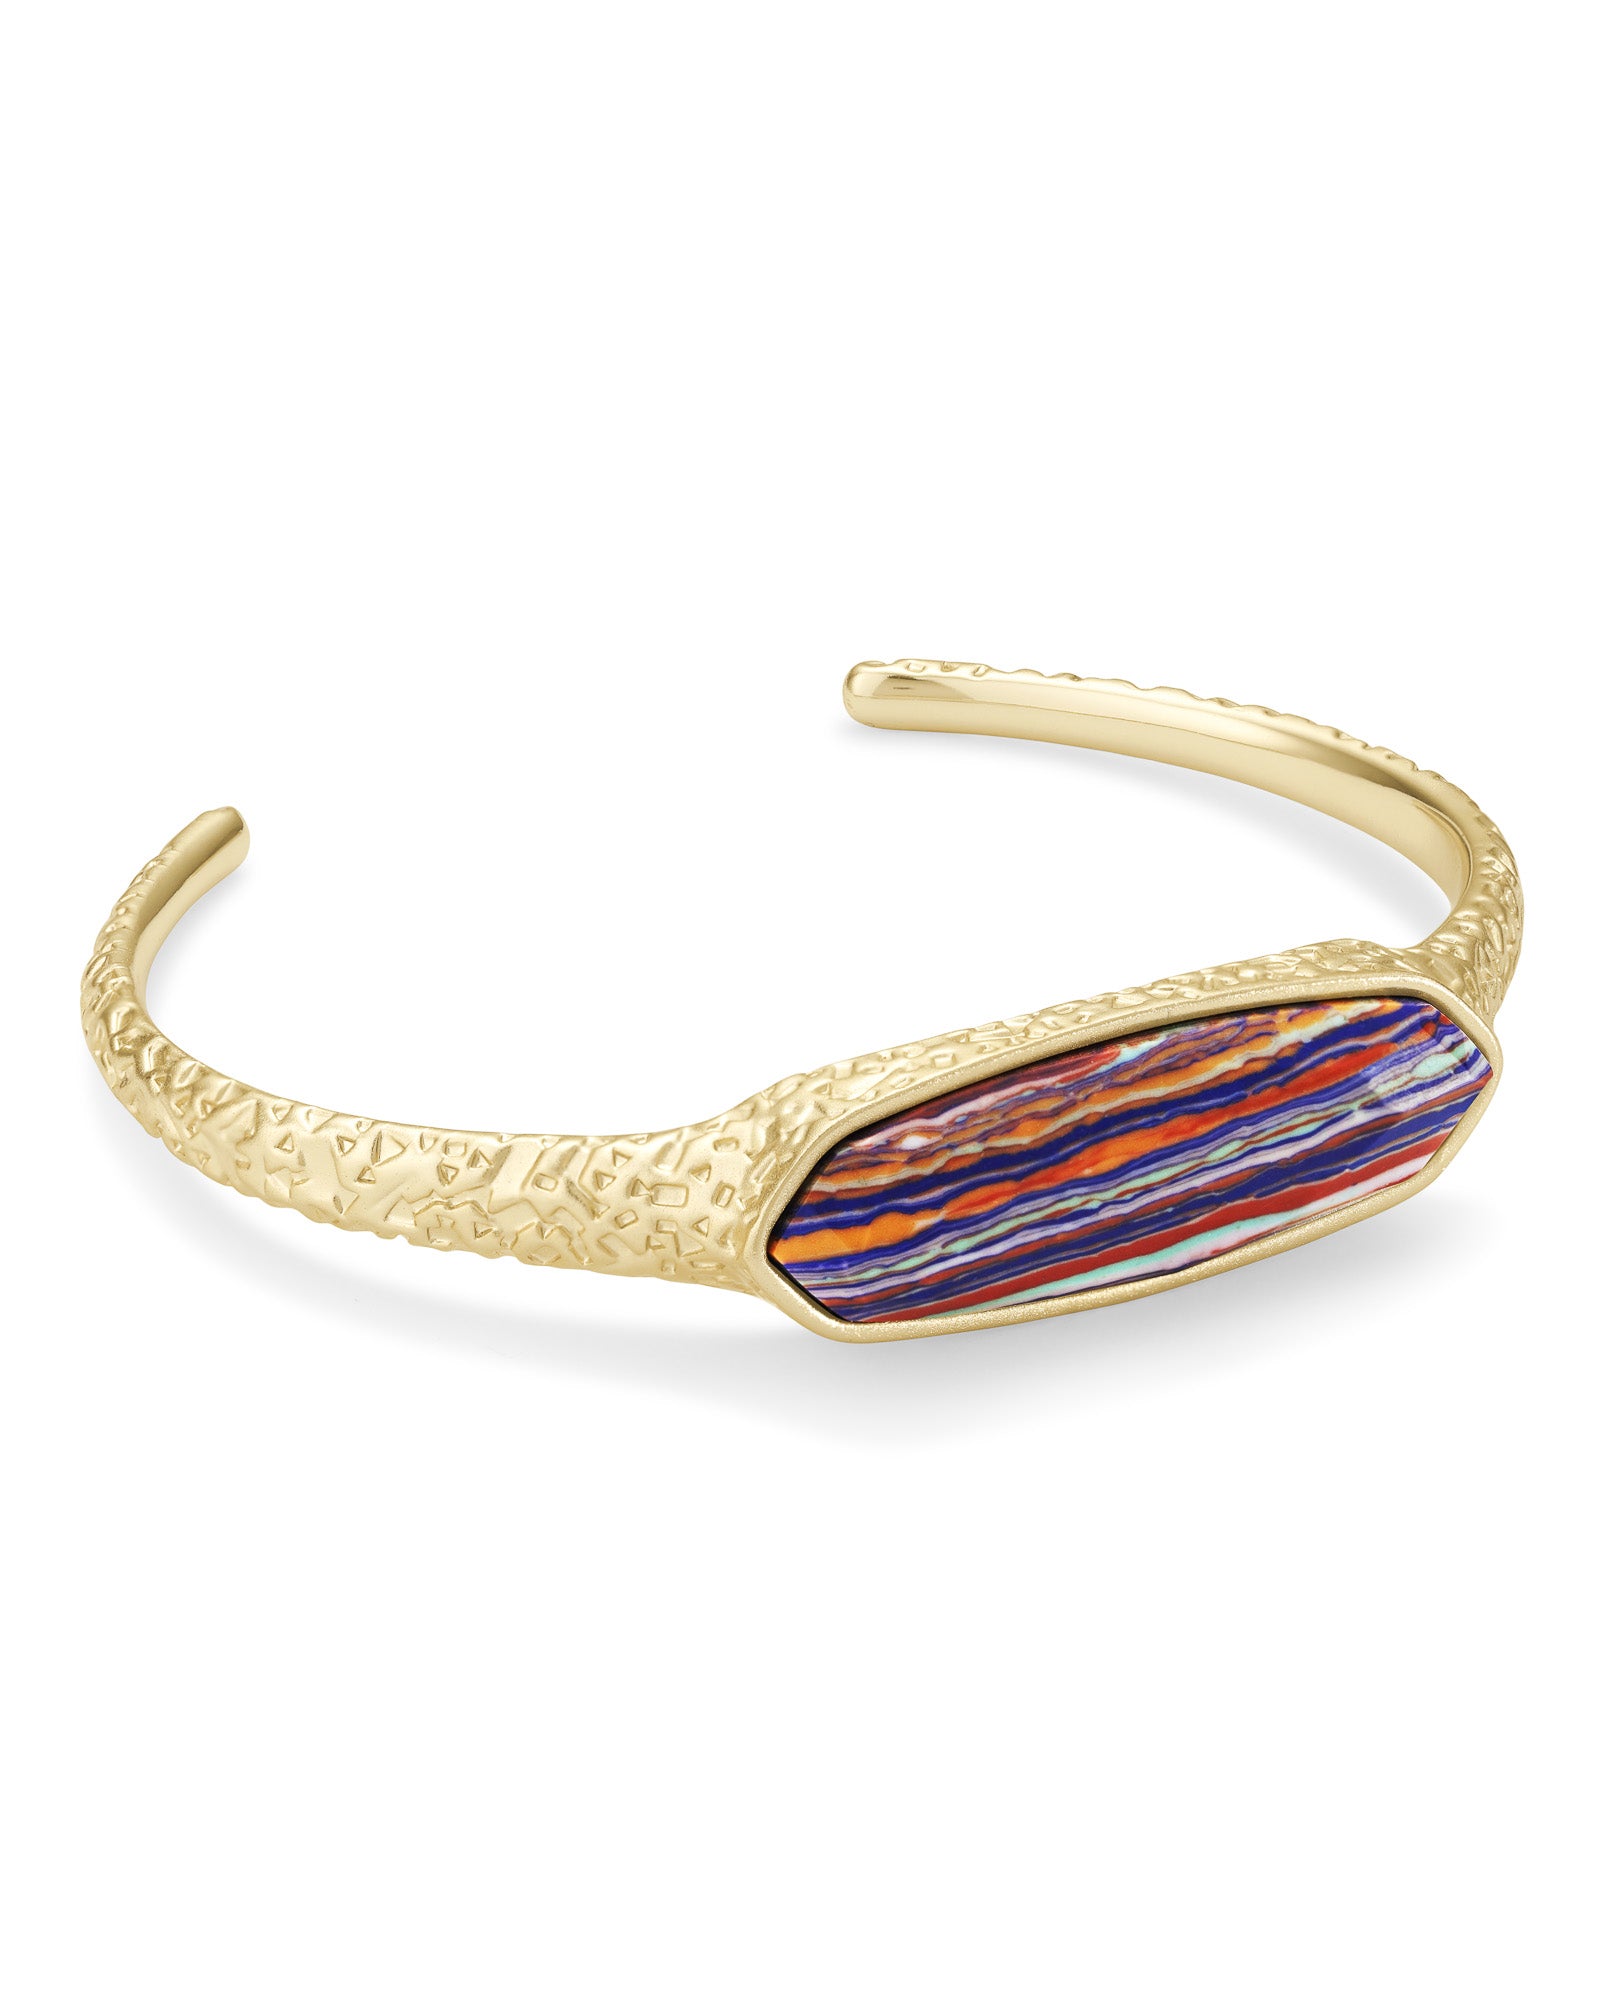 Kendra Scott Maya Cuff Bracelet in Gold – The Bugs Ear